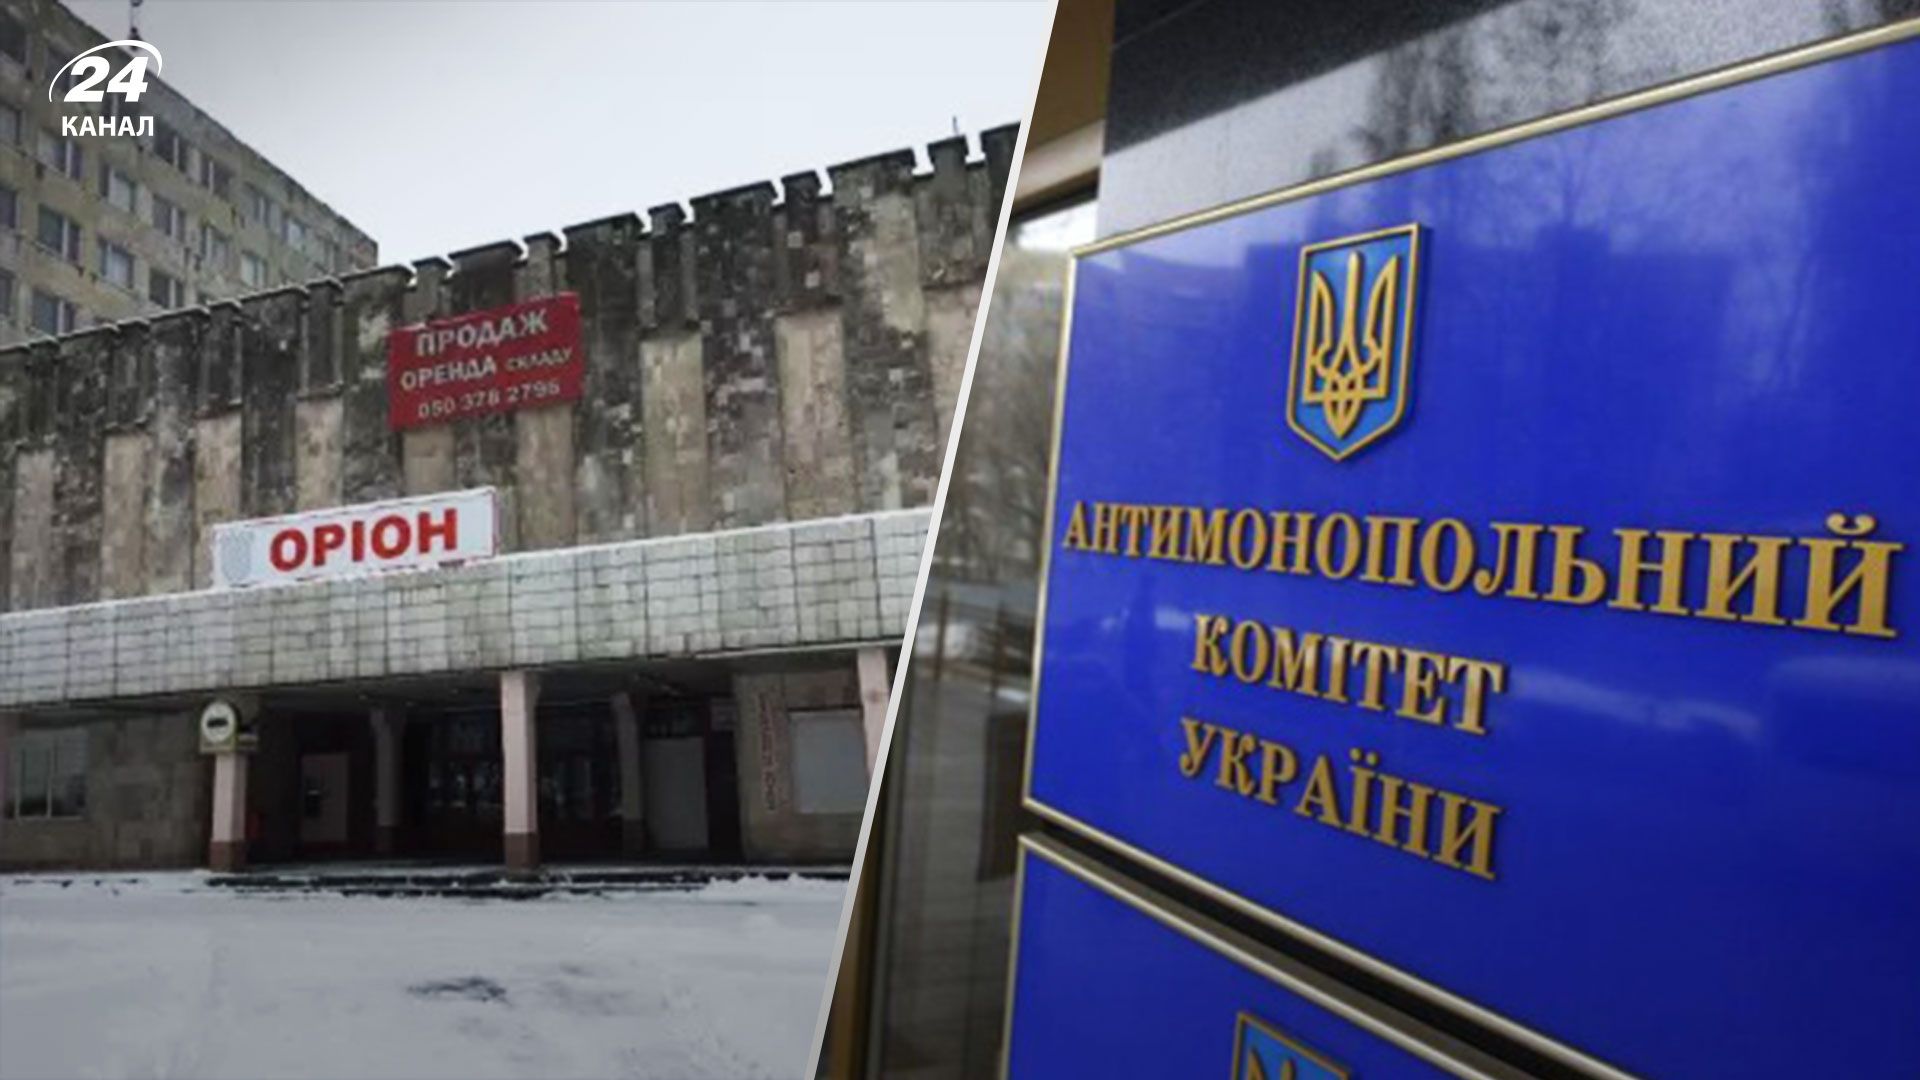 АМКУ оштрафовало два предприятия за сговор во время аукциона по приватизации тернопольского завода